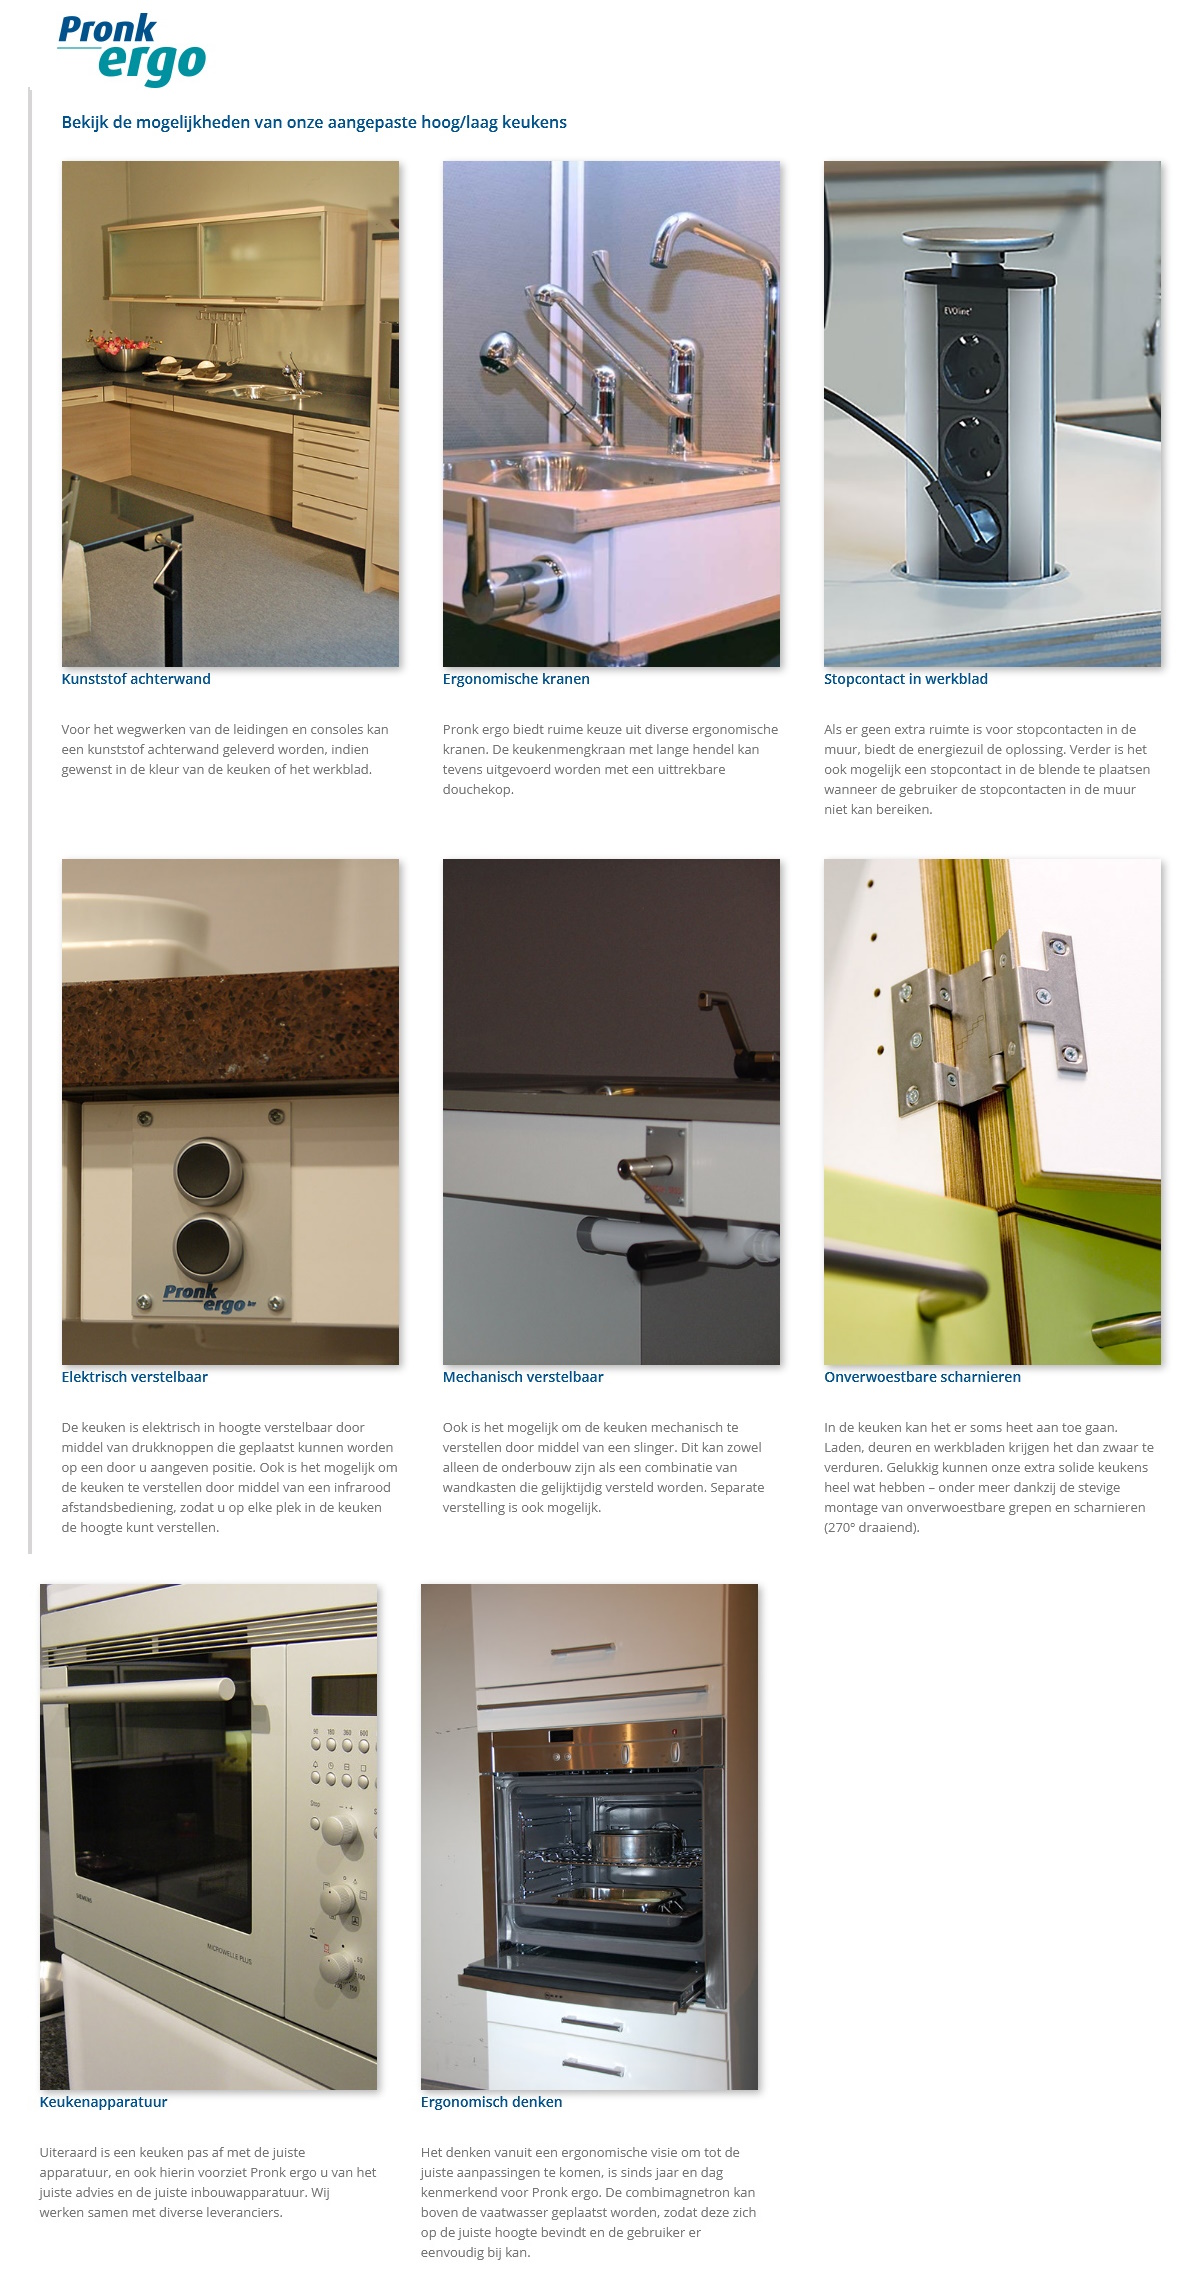 toegevoegd document 7 van Pronk Ergo hoogte verstelbare keukenuitrusting / aangepaste keukeninrichting assortiment 